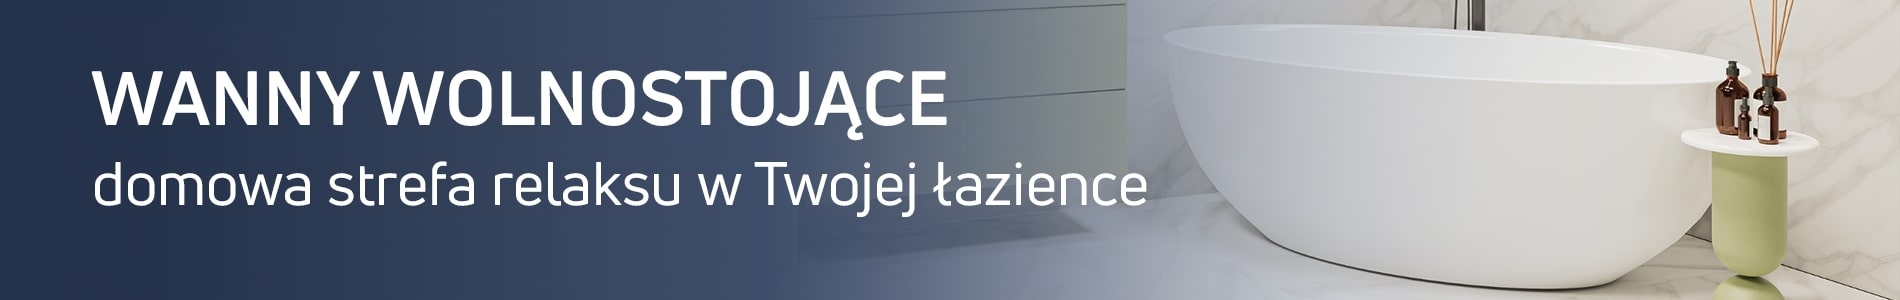 Wanny wolnostojące - Szeroki wybór - Massi.pl